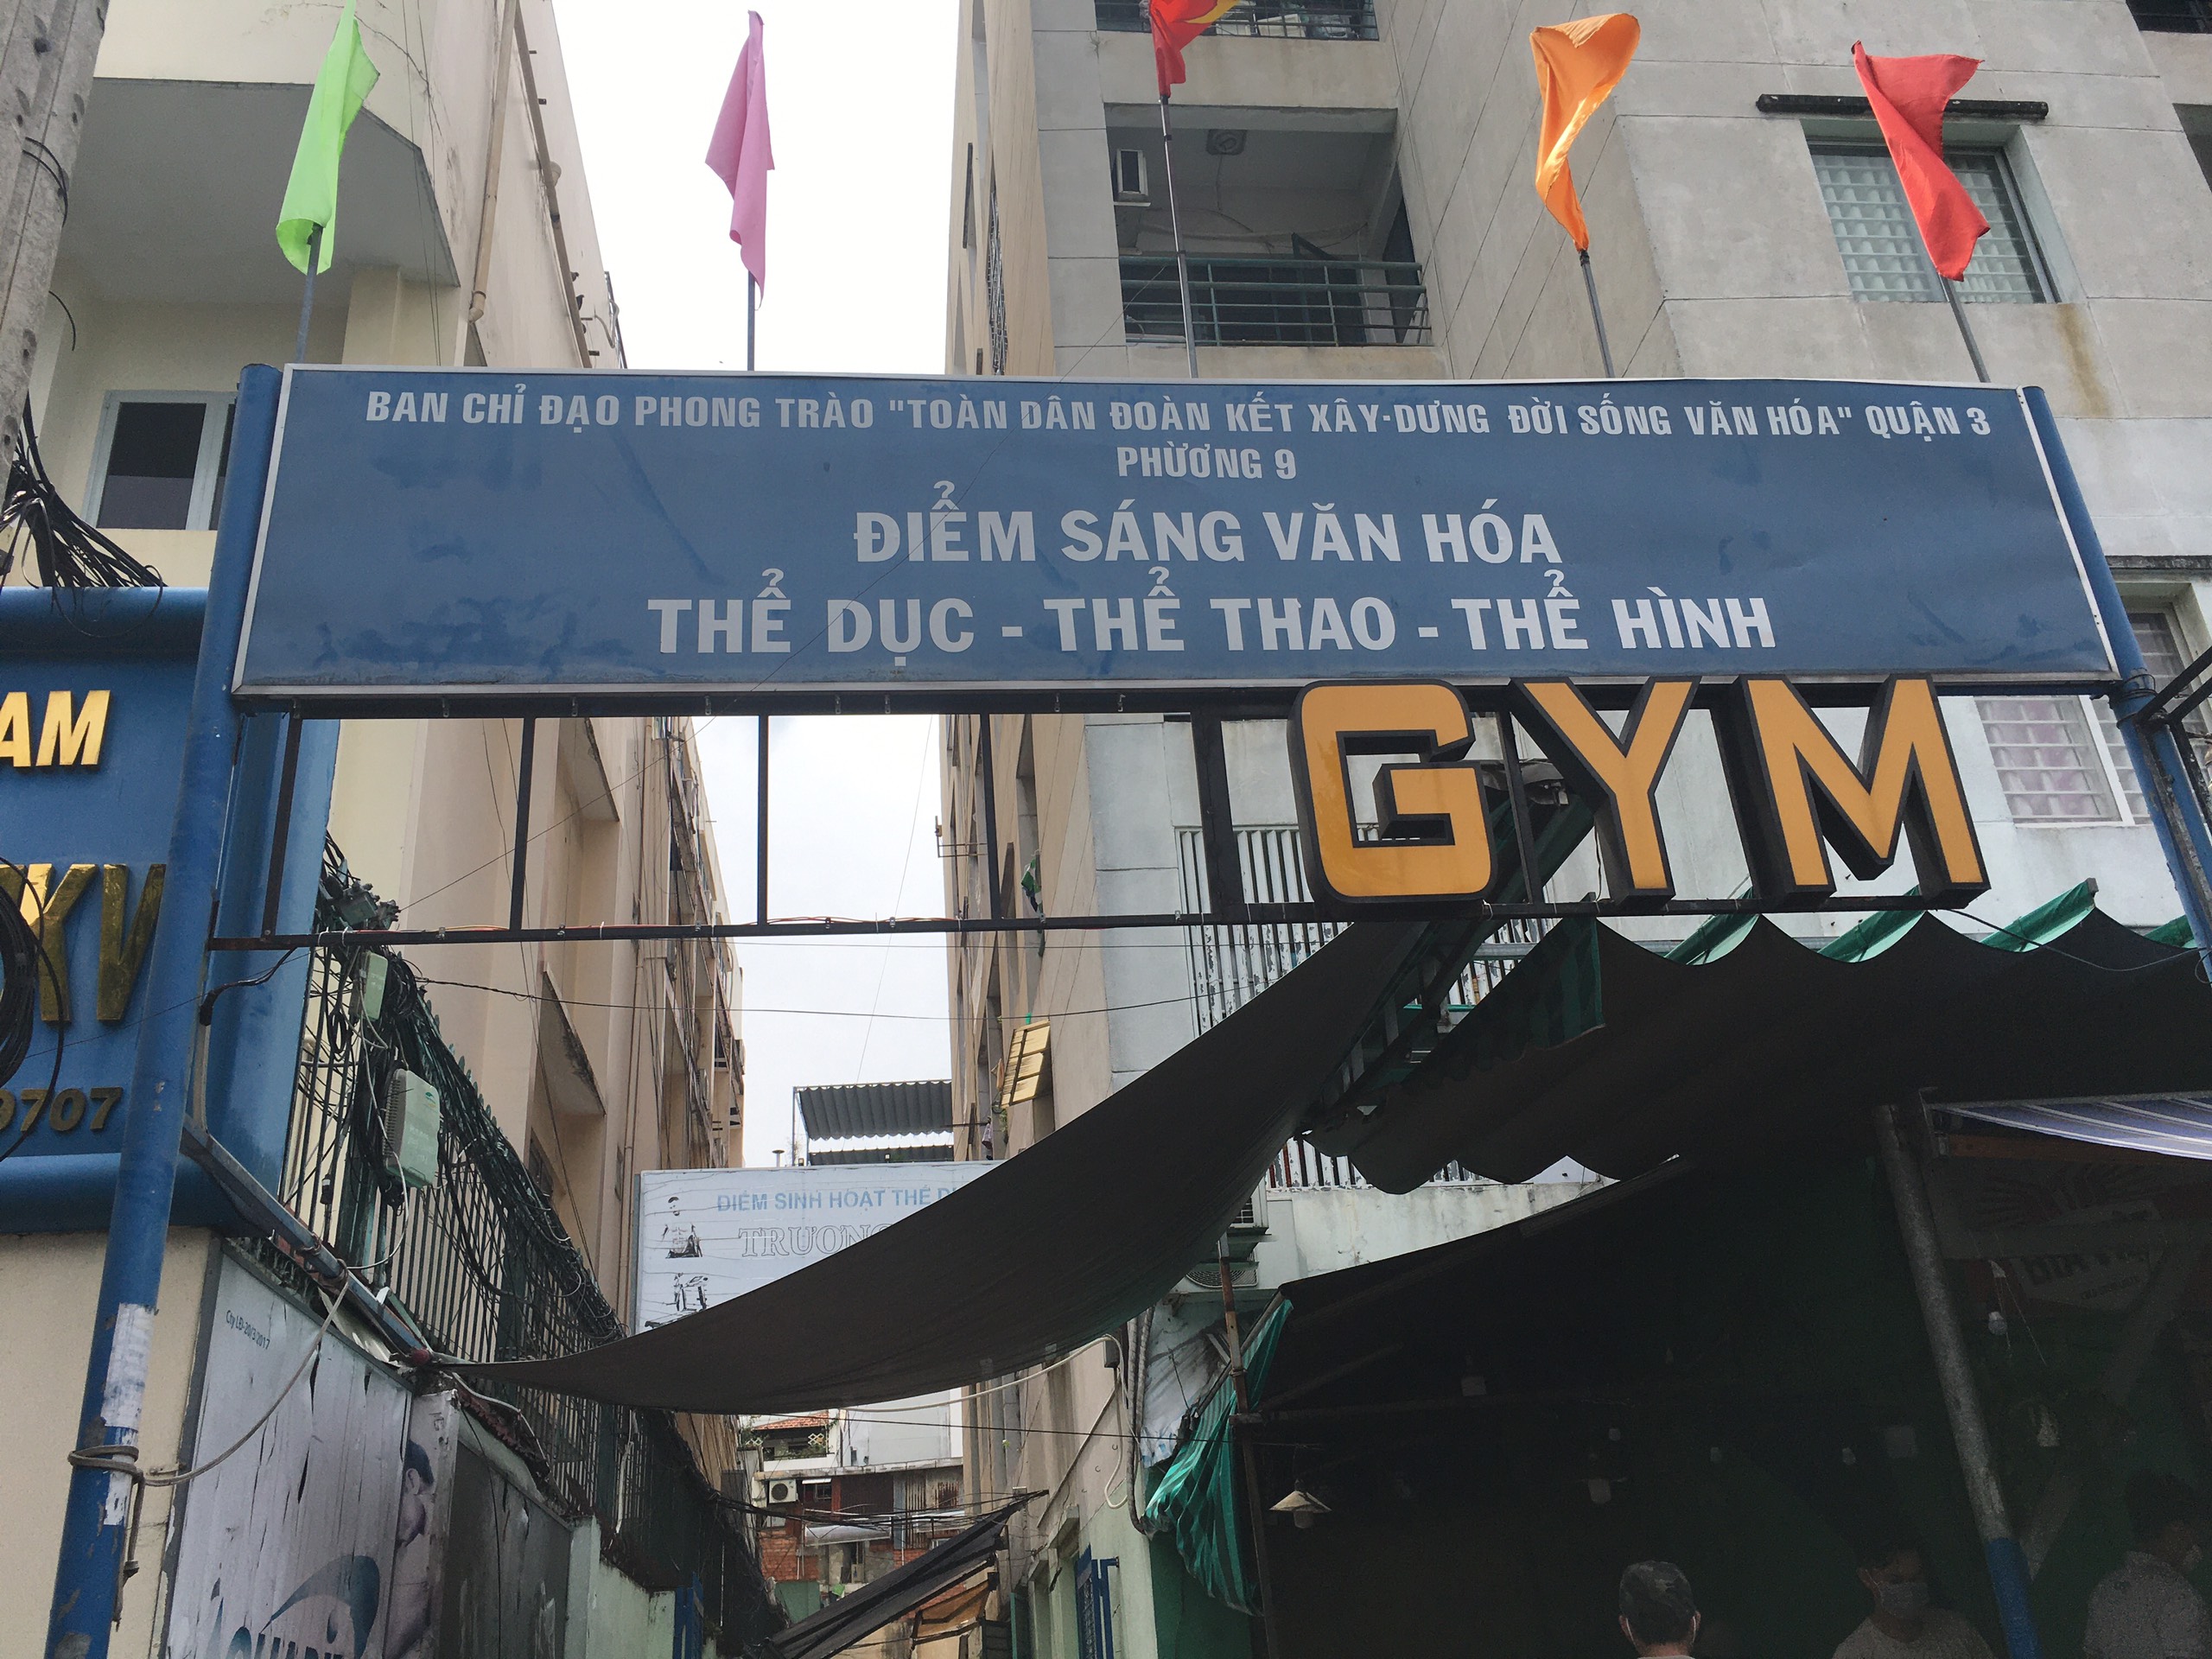 Dũng Gym – Chung cư Kỳ Đồng